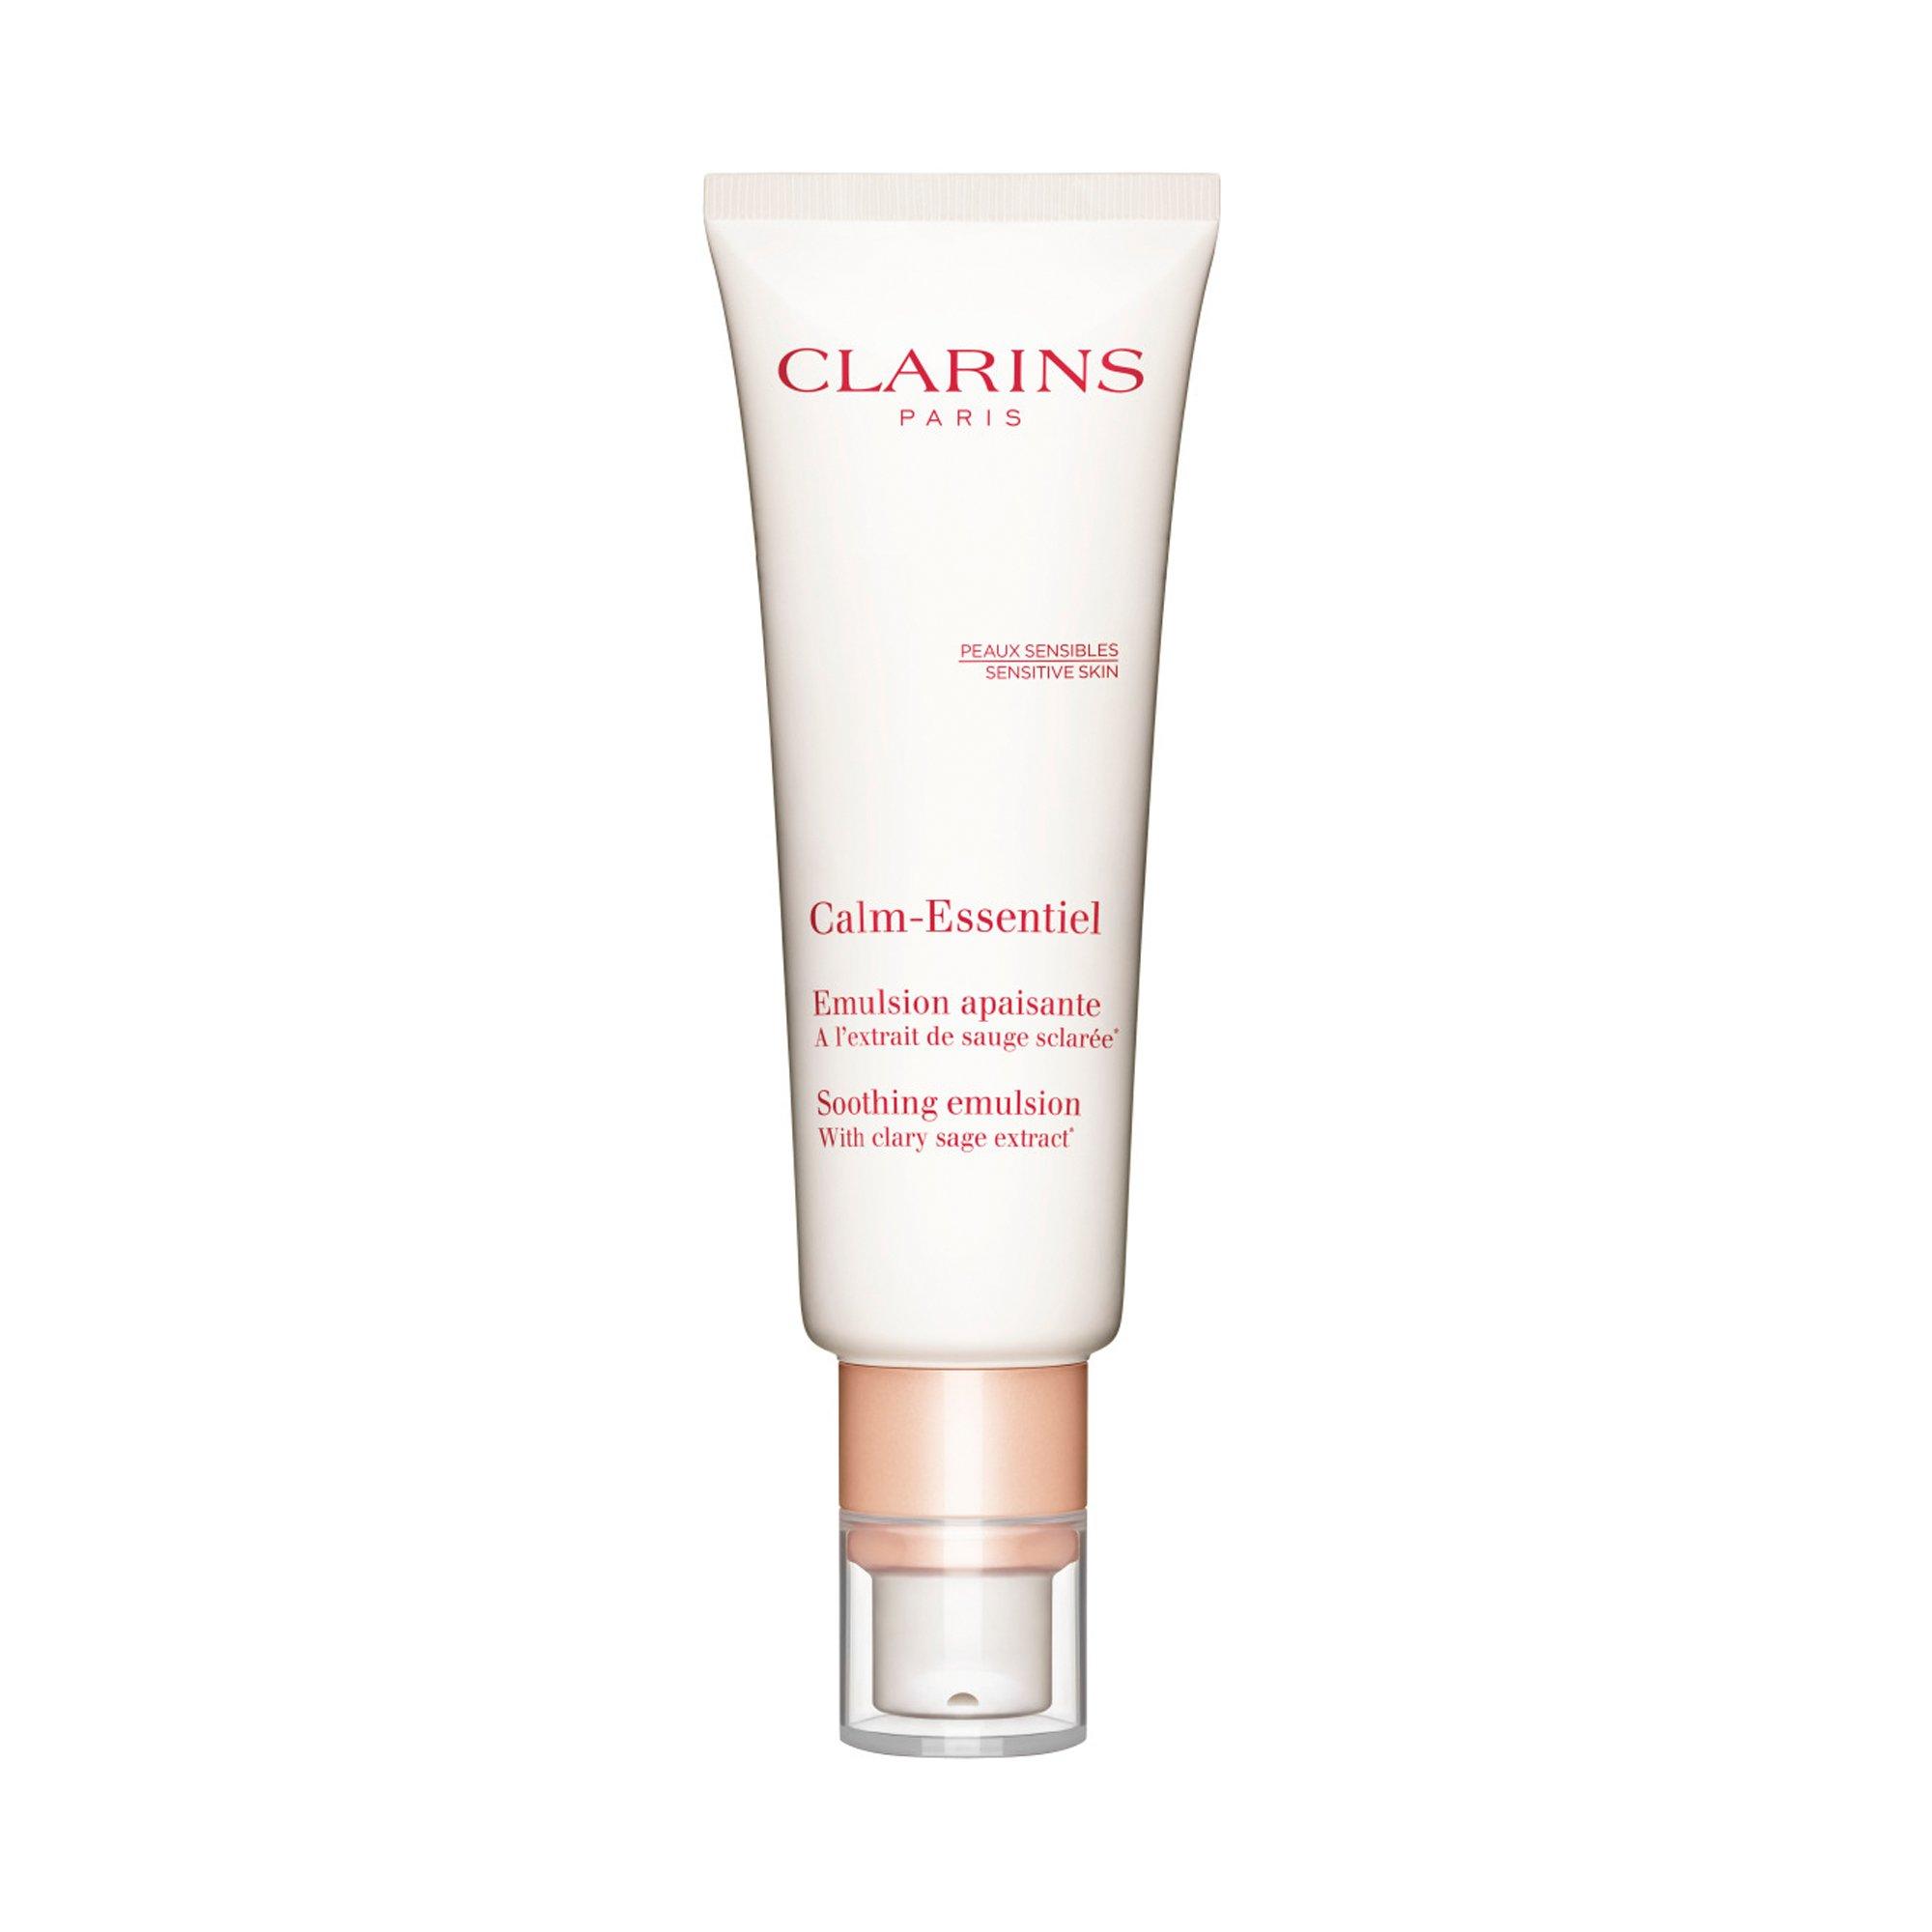 Image of CLARINS Calm-Essentiel Beruhigende Emulsion - 50ml